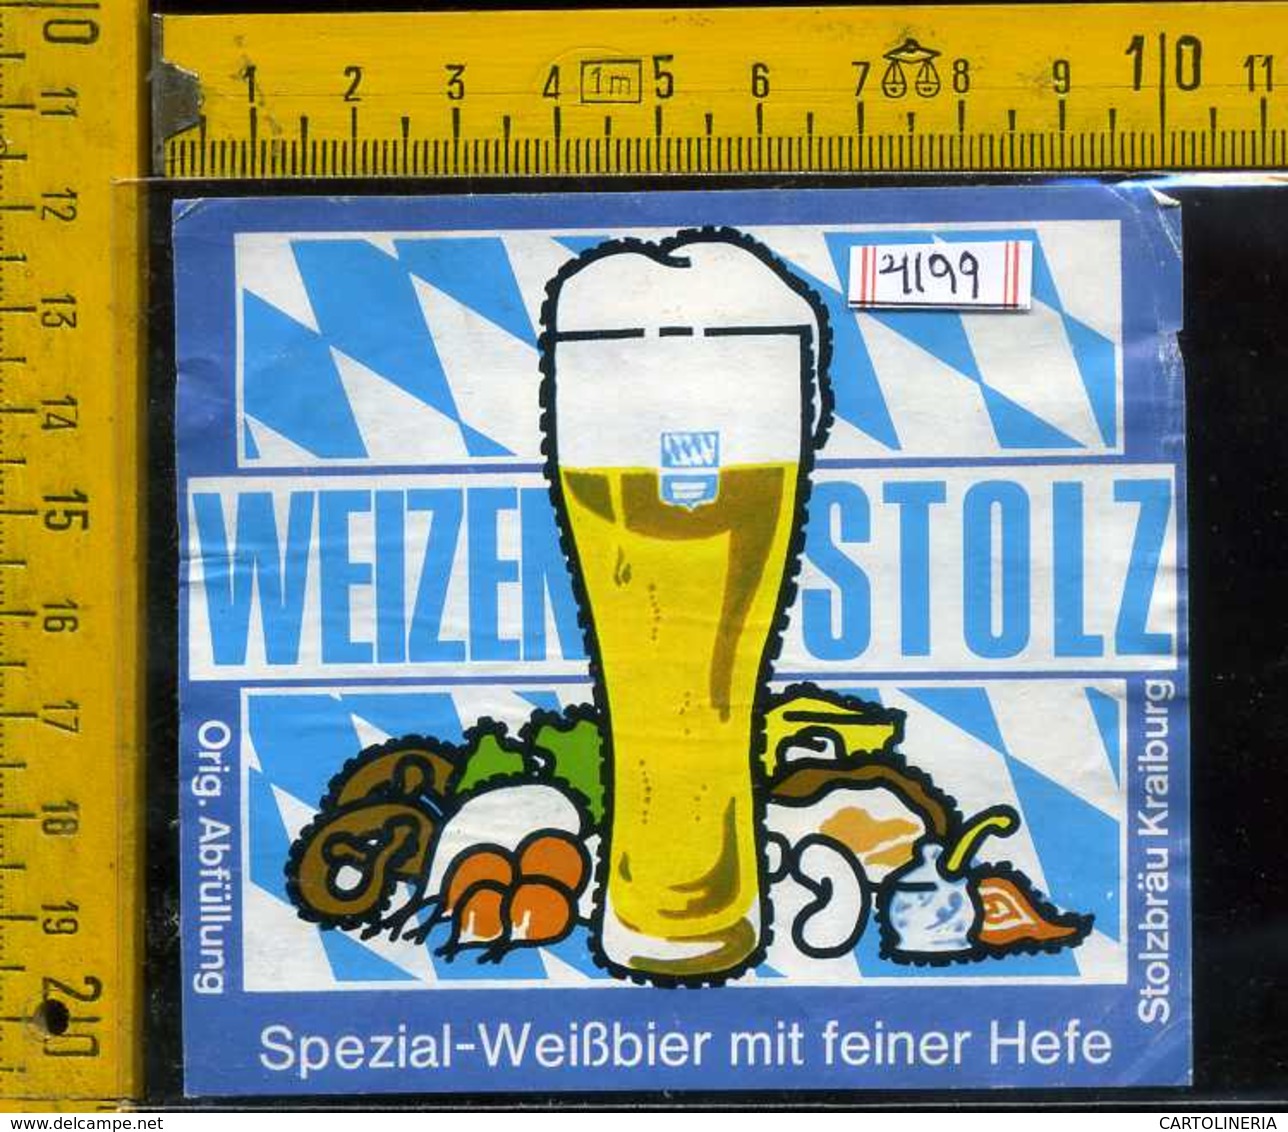 Etichetta Birra Weizen Stolz Spezial-WeiBbier - Germania - Birra